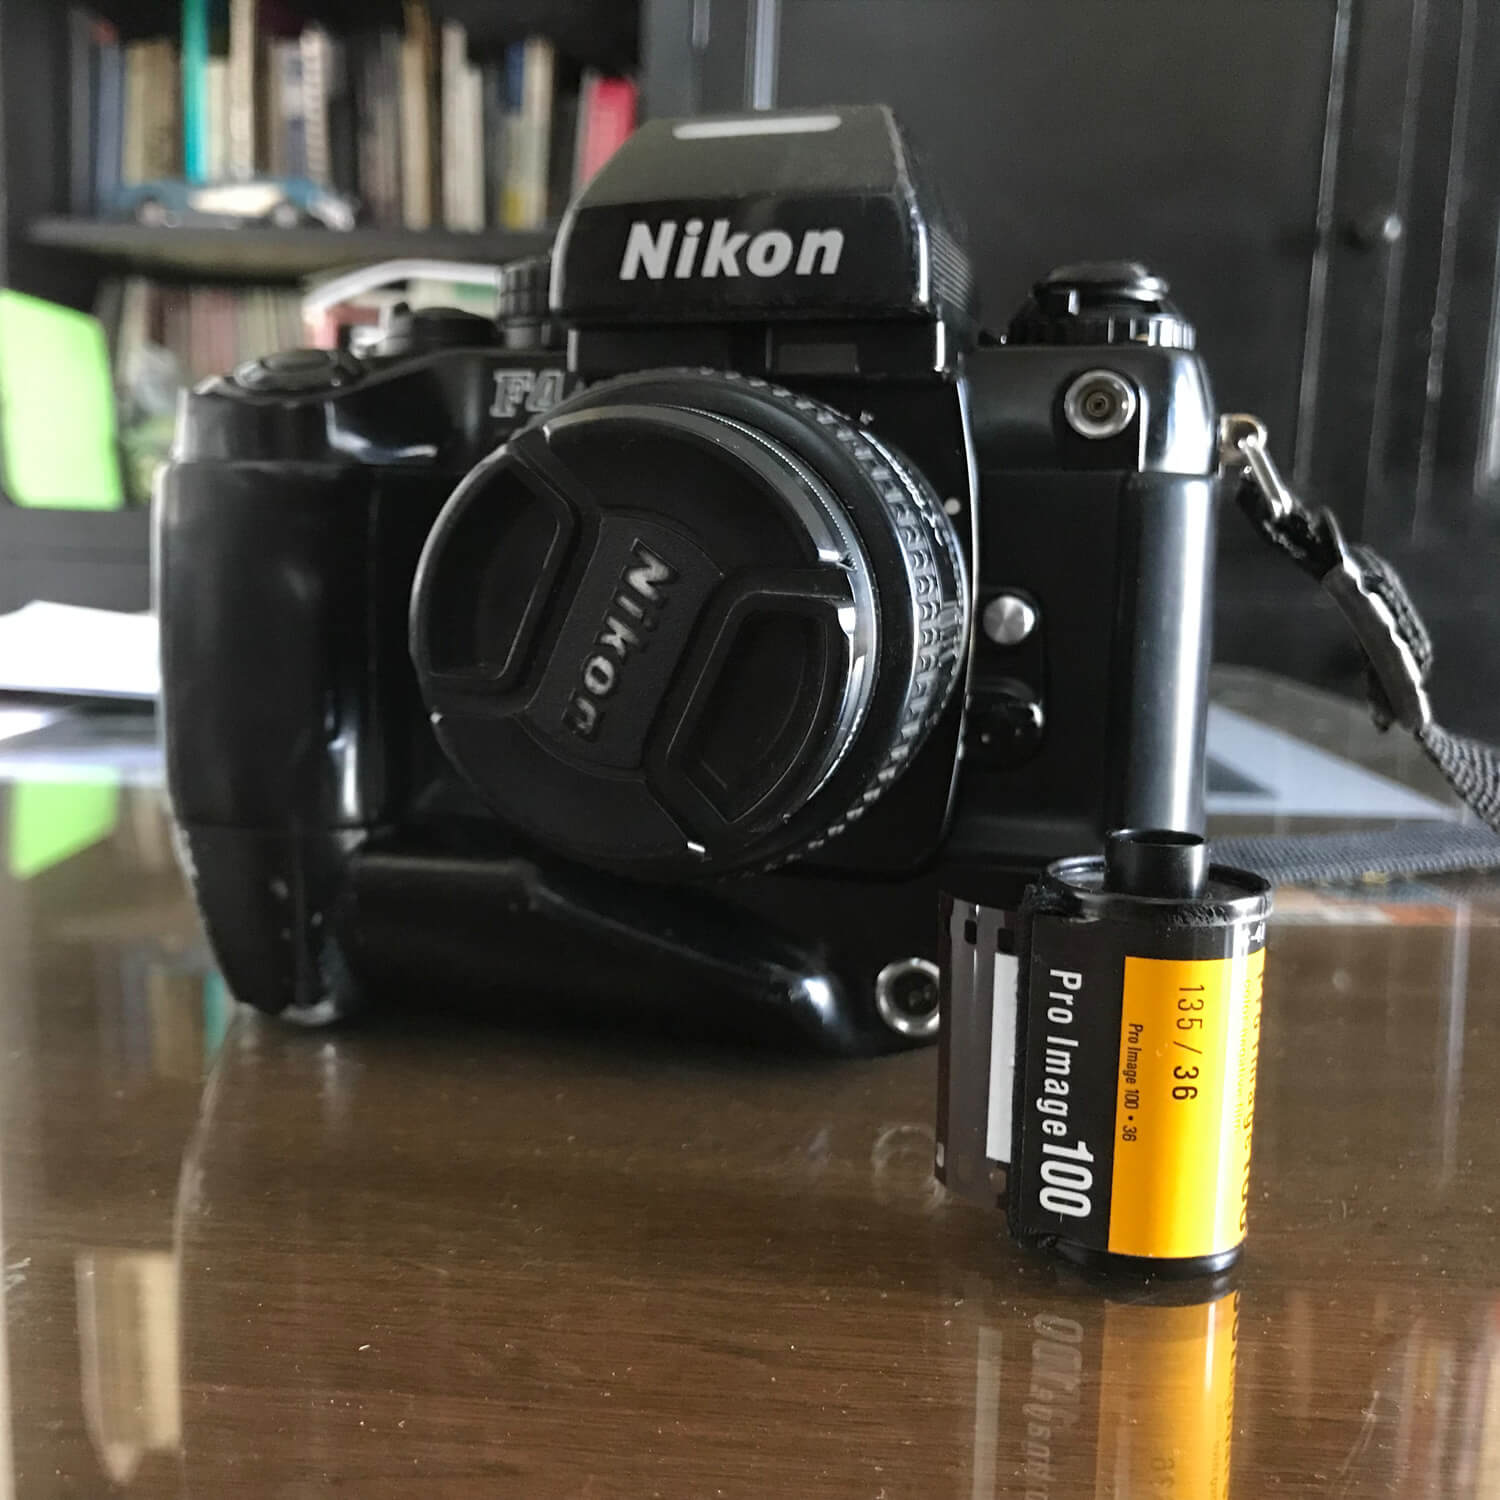 Kodak Pro Image 100 and my Nikon F4 + Nikkor 24mm f/2.8 AF, Abel M